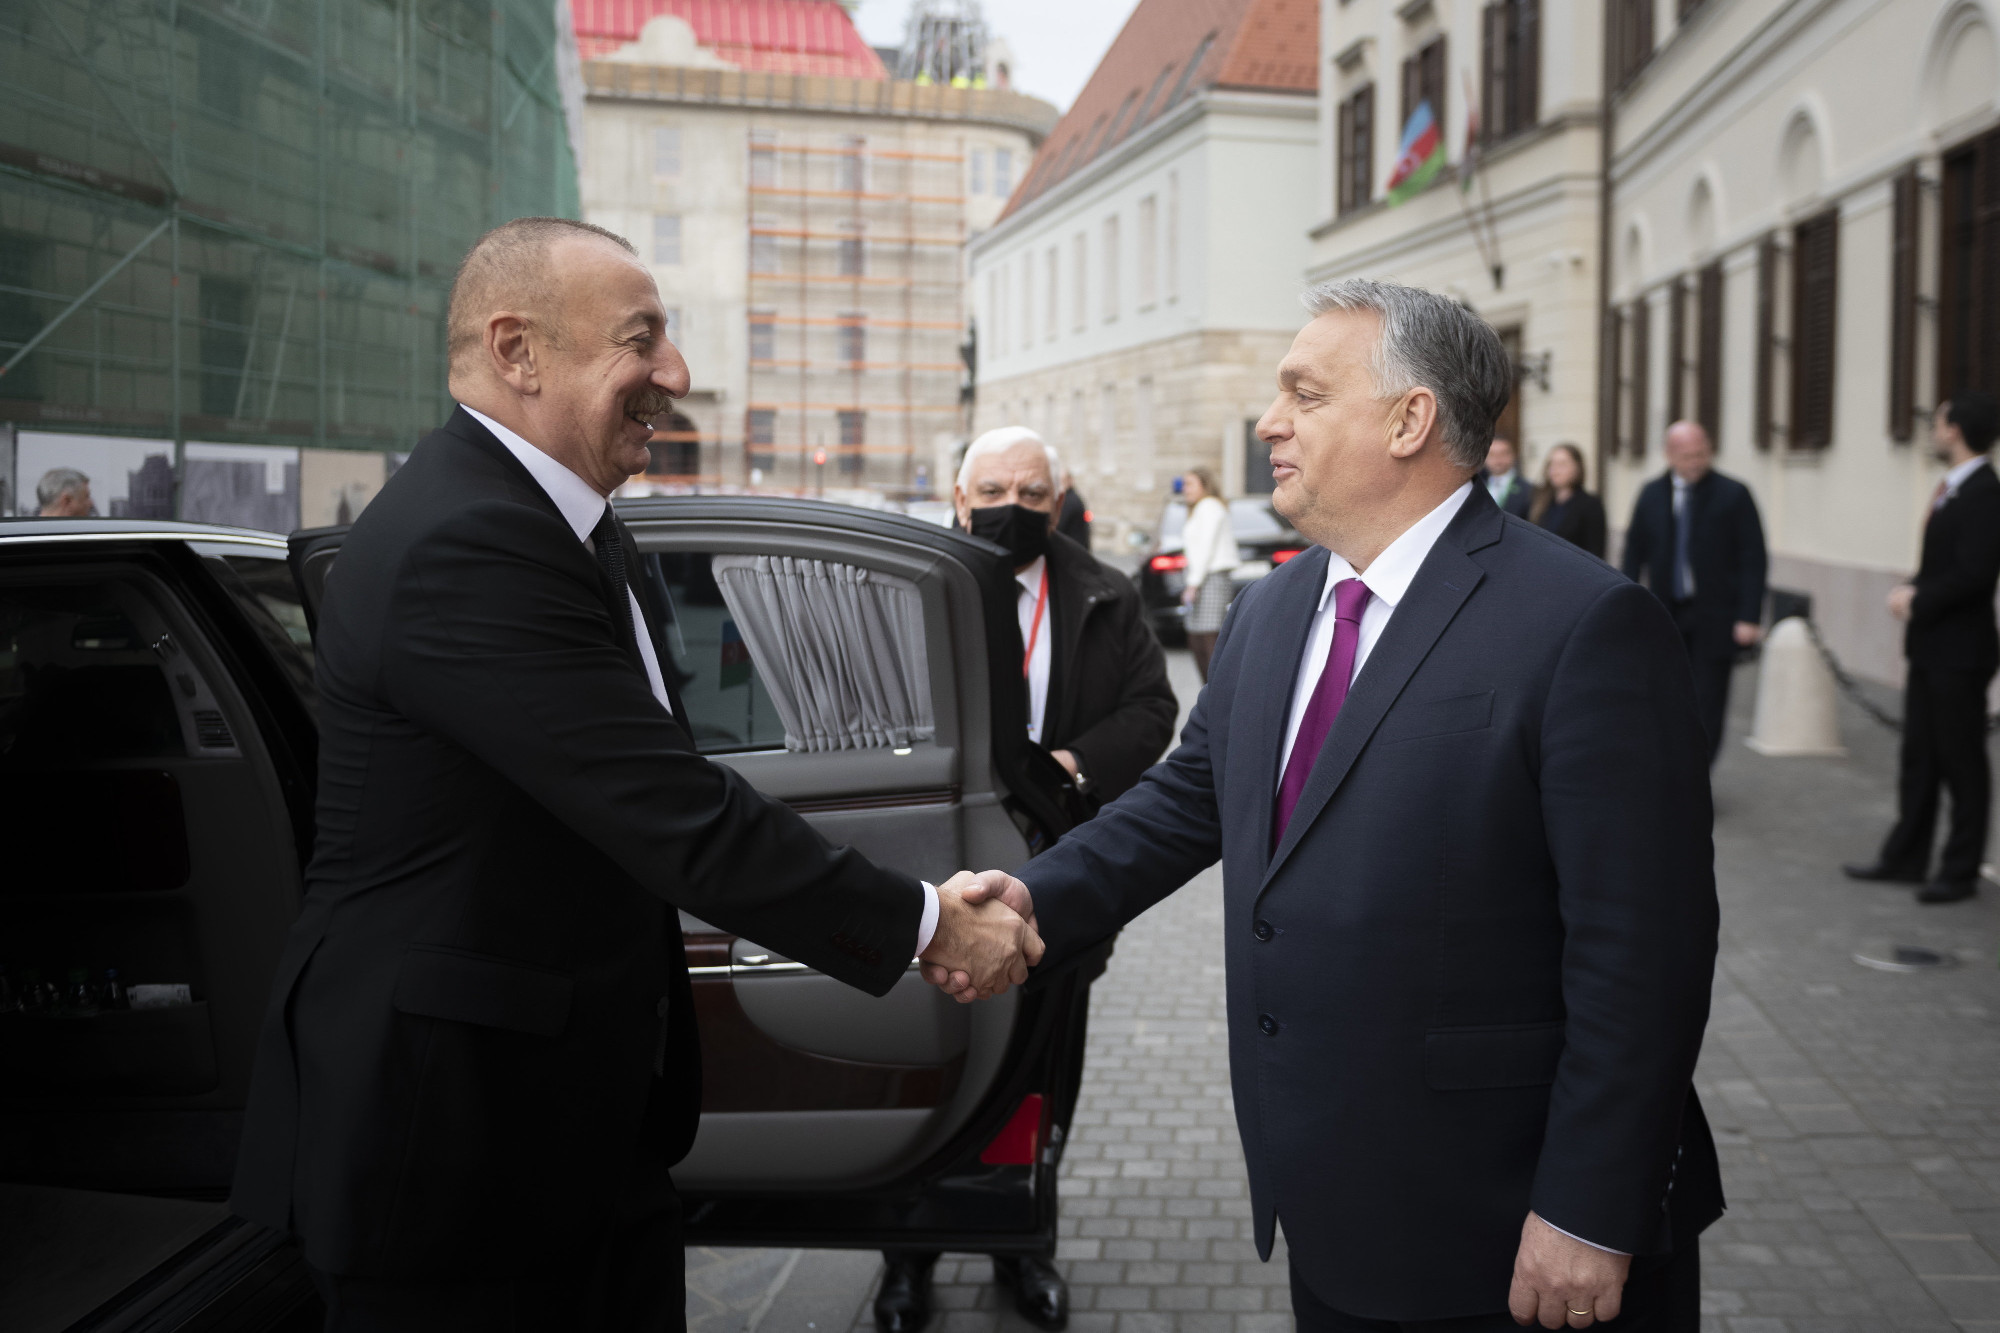 Orbán Viktor: Egy fokozattal feljebb emeltük az együttműködés szintjét Azerbajdzsánnal